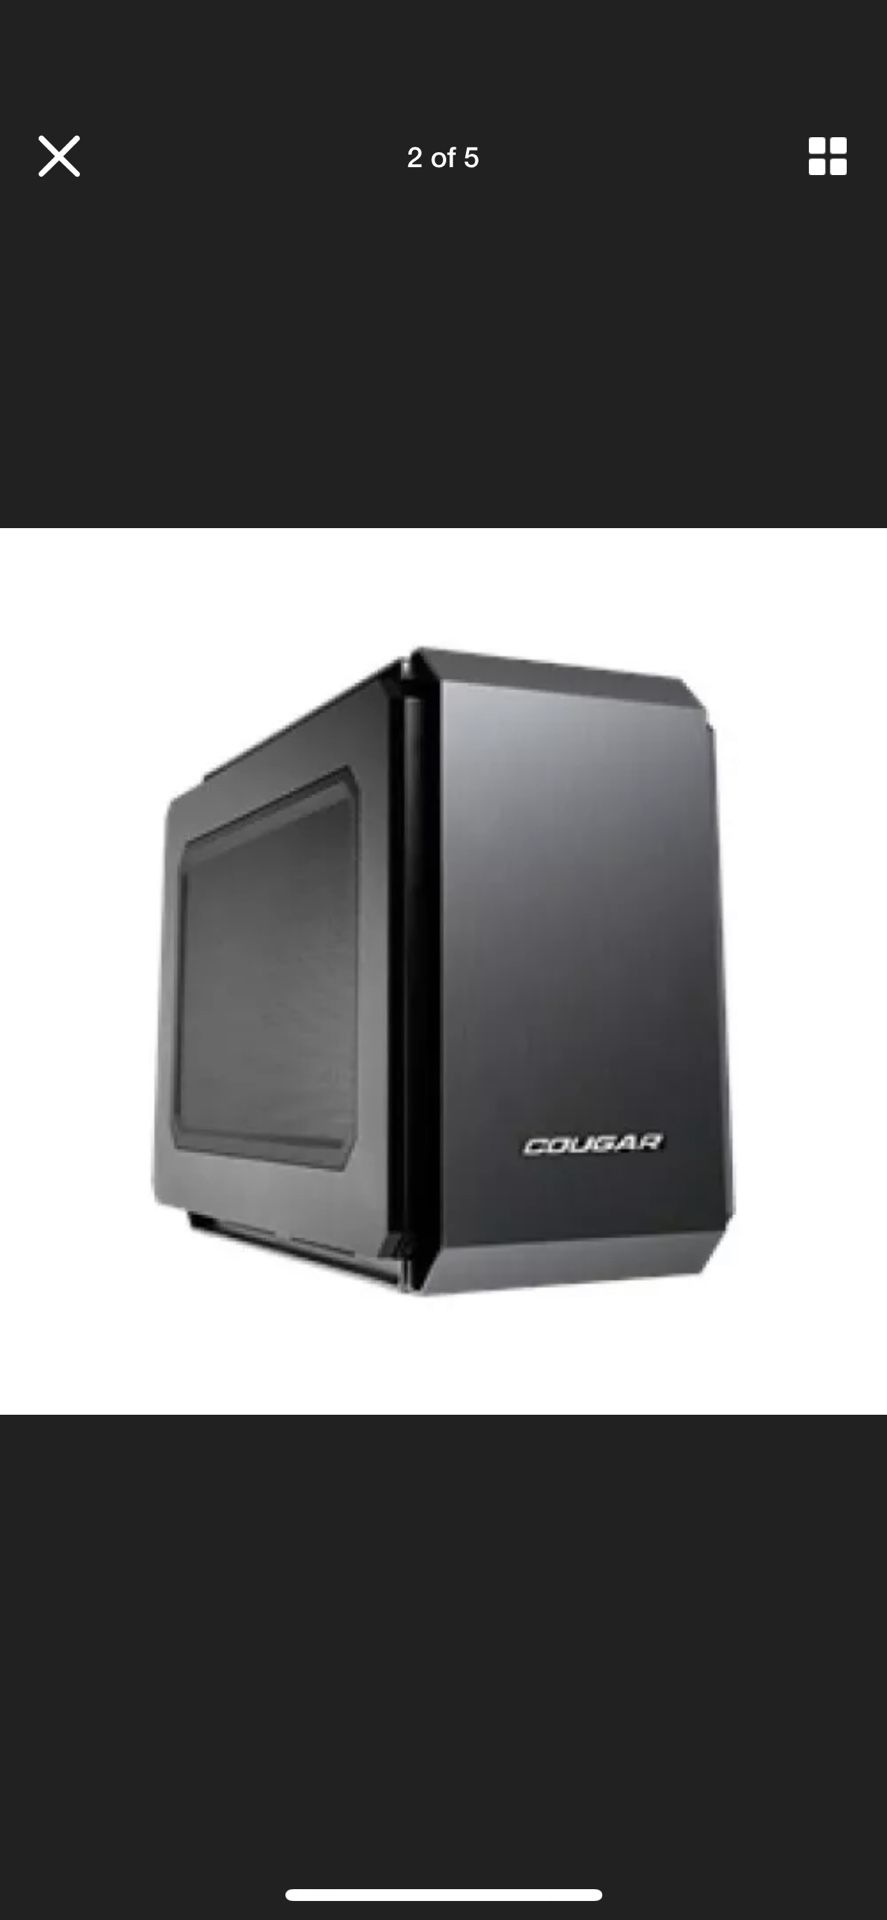 Brand new cougar mini ITX computer case